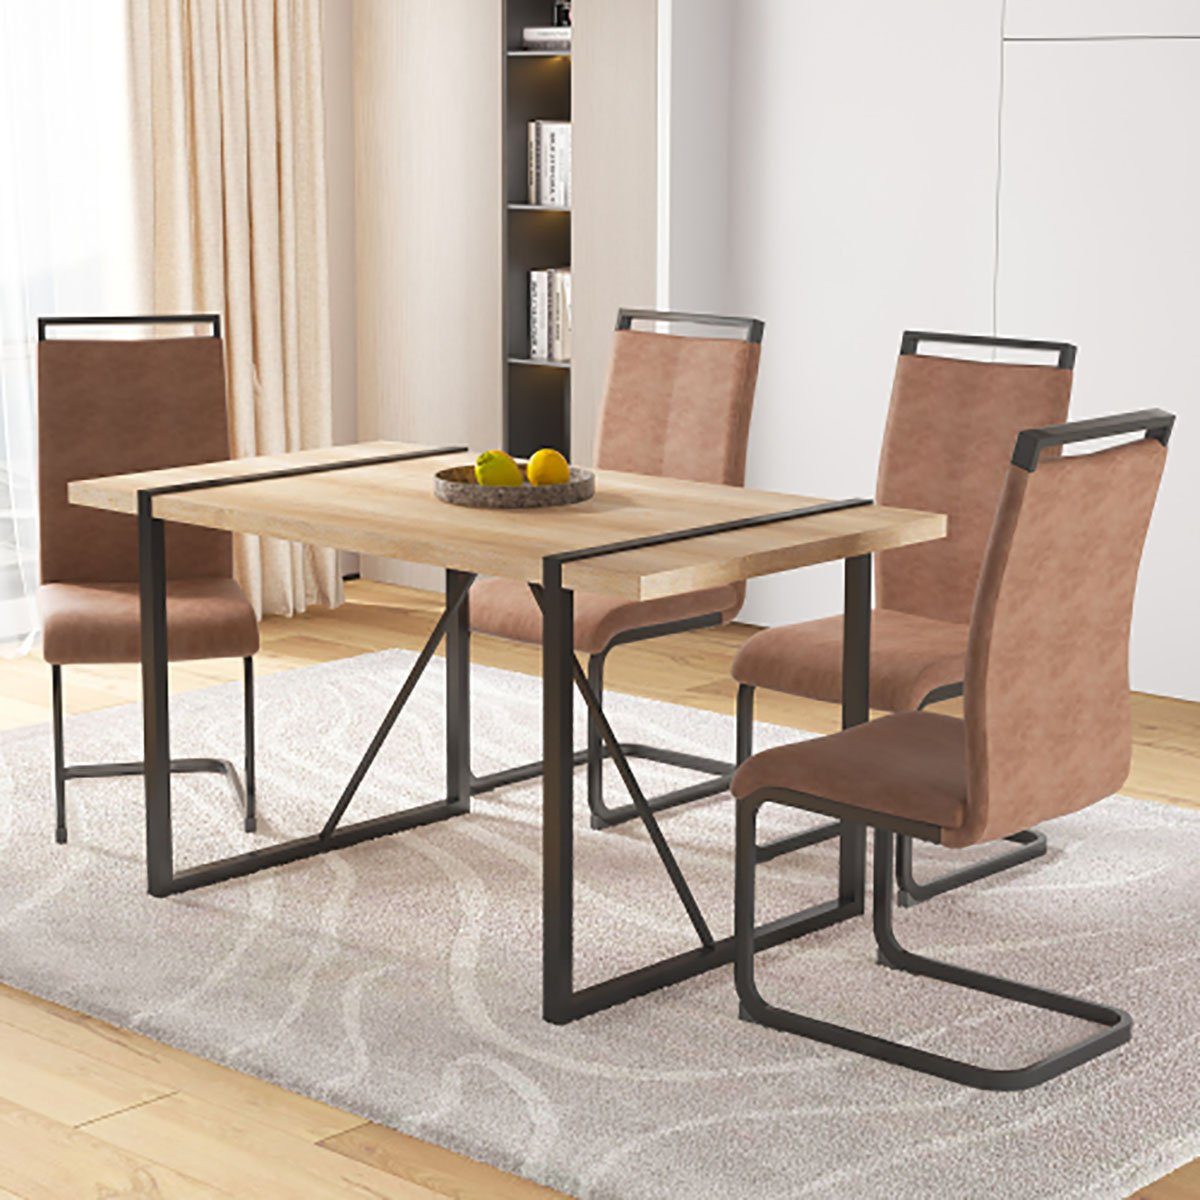 DOTMALL Tischsitz Braunes Esstisch-Set mit 4 braunen Stühlen, rechteckig